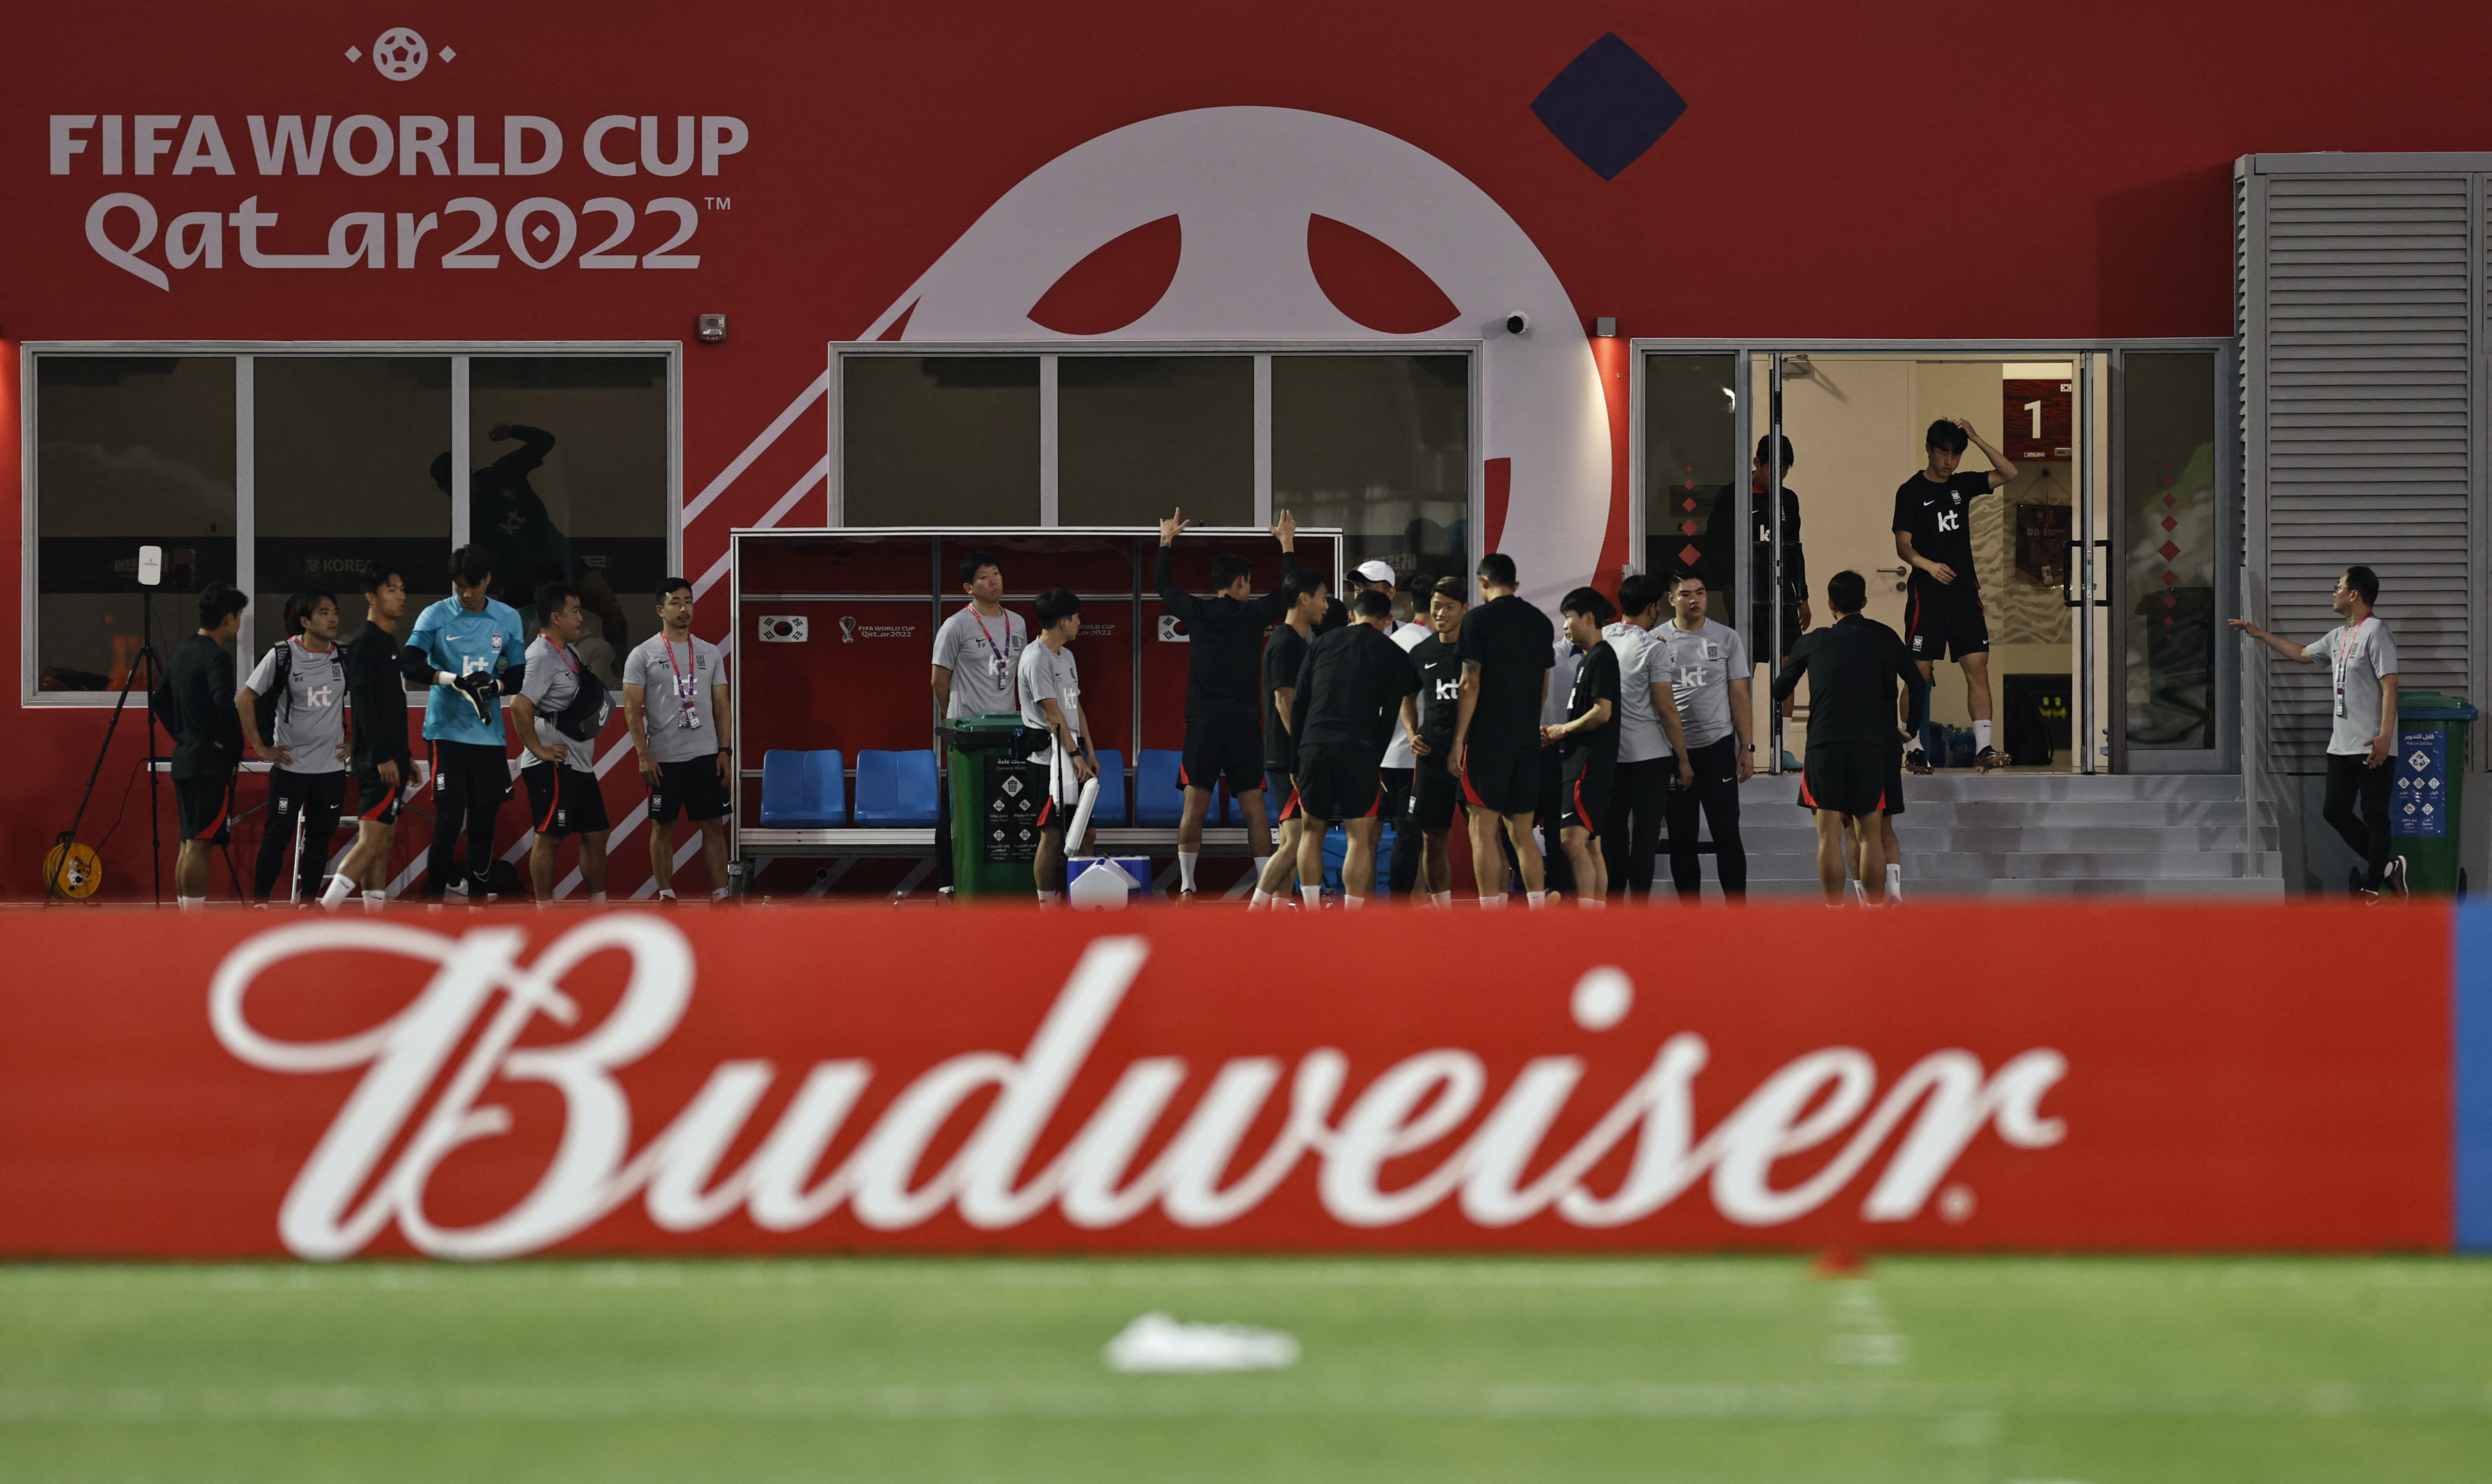 Los organizadores del Mundial prohibieron la venta de cerveza en los estadios (Reuters)